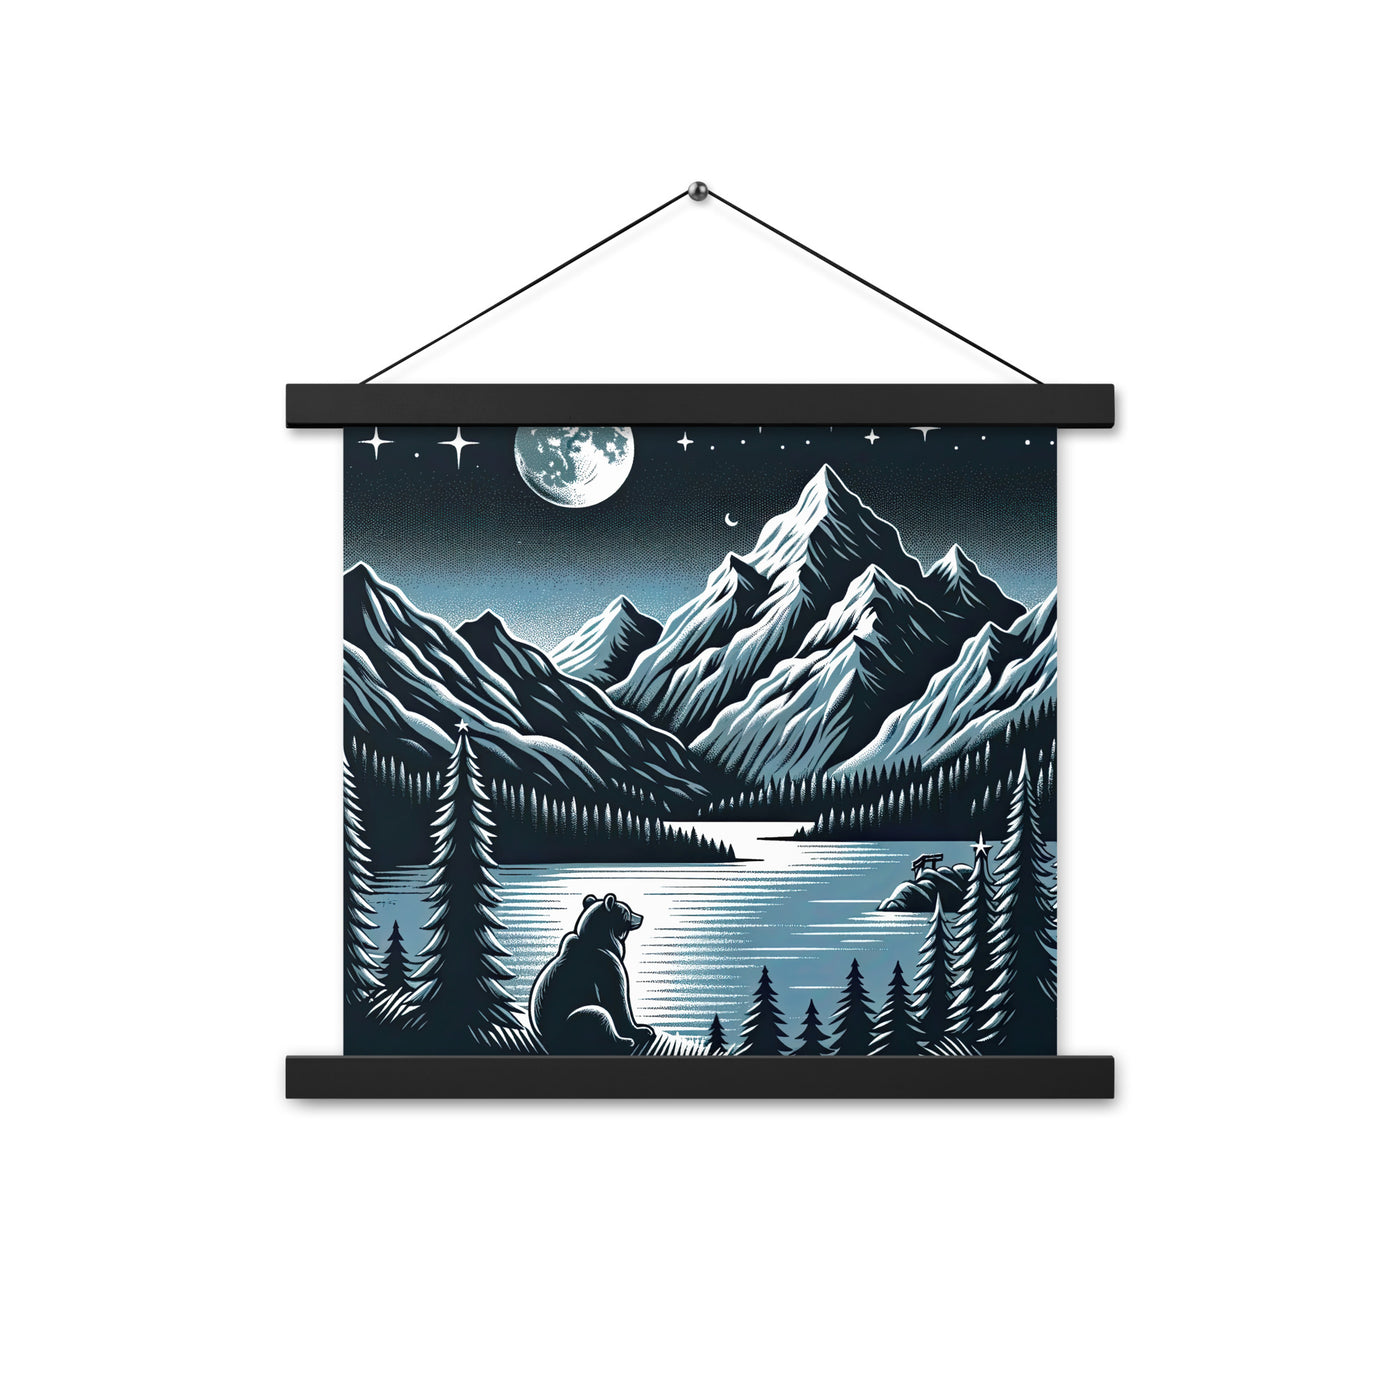 Bär in Alpen-Mondnacht, silberne Berge, schimmernde Seen - Premium Poster mit Aufhängung camping xxx yyy zzz 35.6 x 35.6 cm